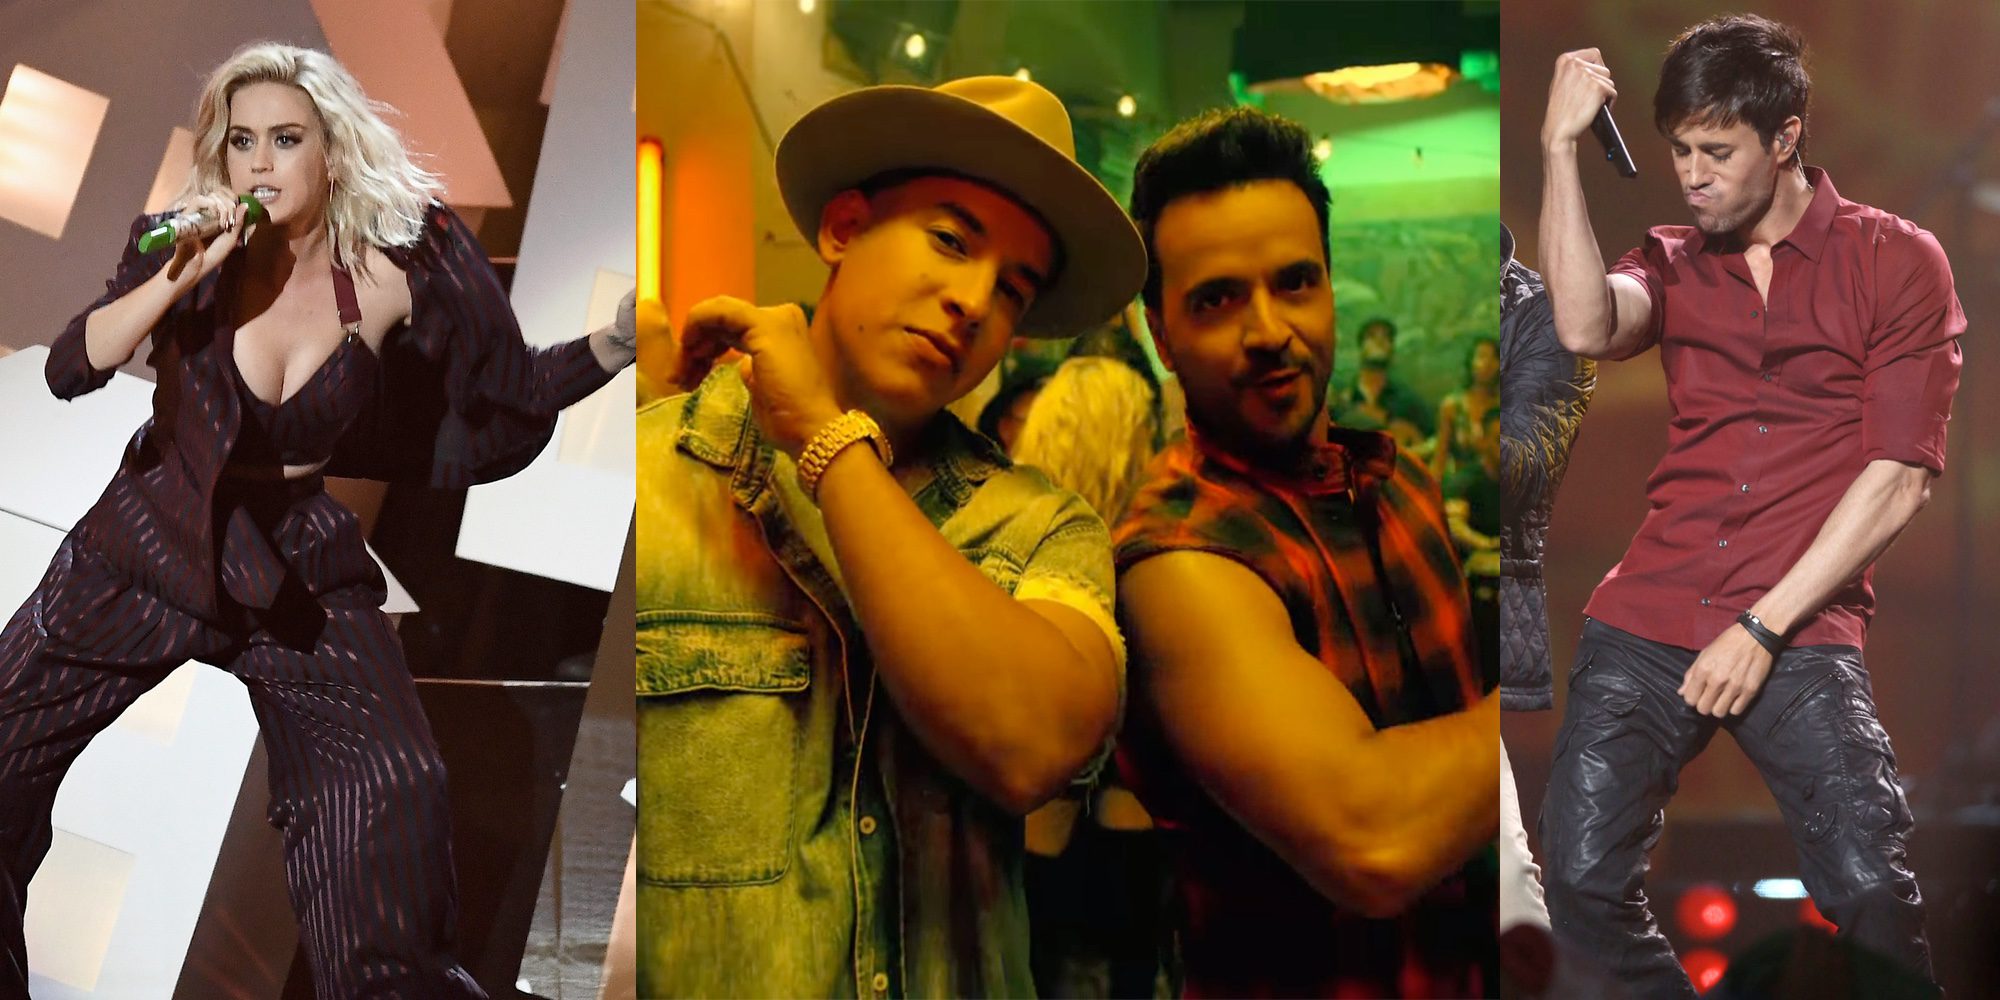 Katy Perry y Enrique Iglesias llegan a una lista de música liderada por Luis Fonsi y Daddy Yankee con 'Despacito'